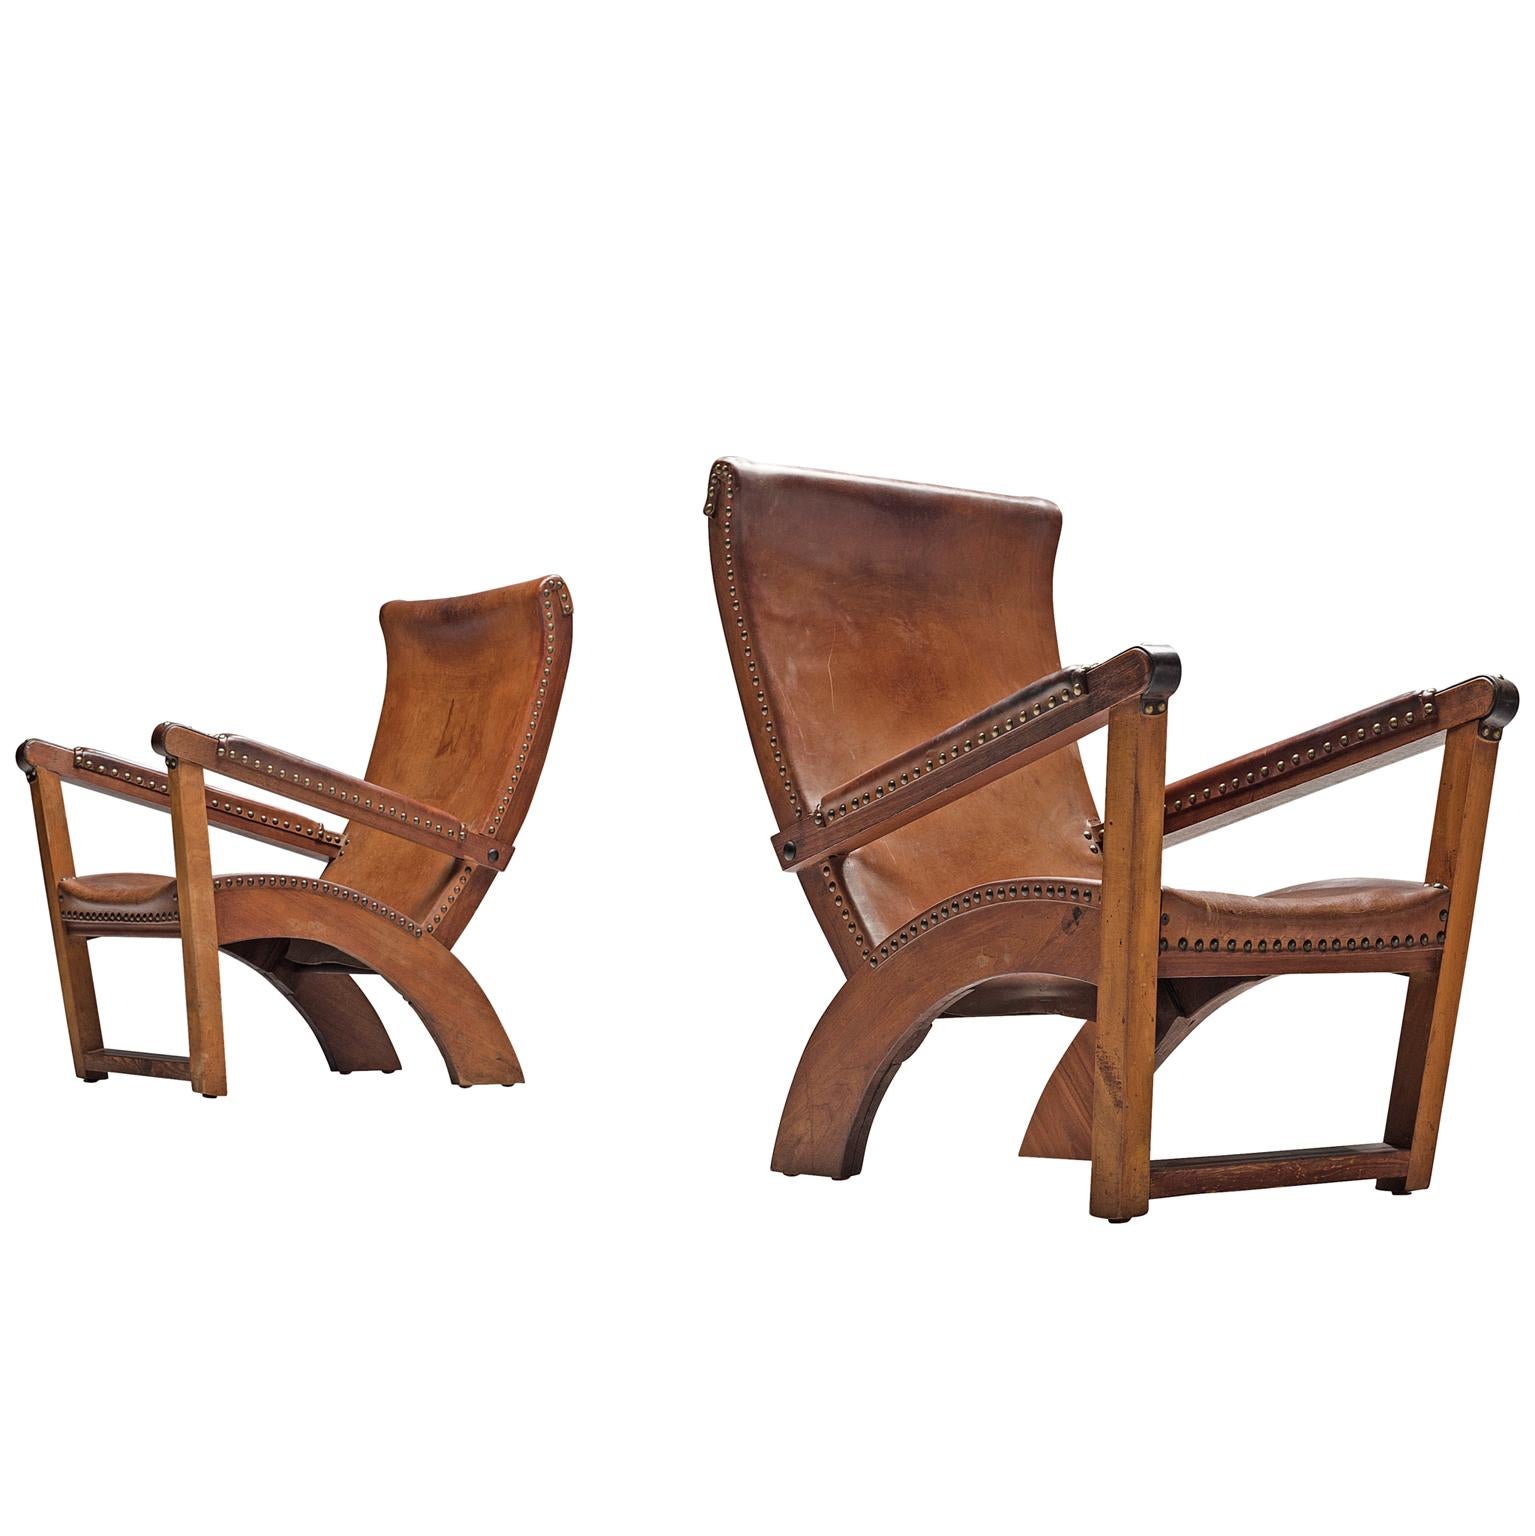 Mogens Voltelen Cabinet Maker 'Copenhagen' Chairs